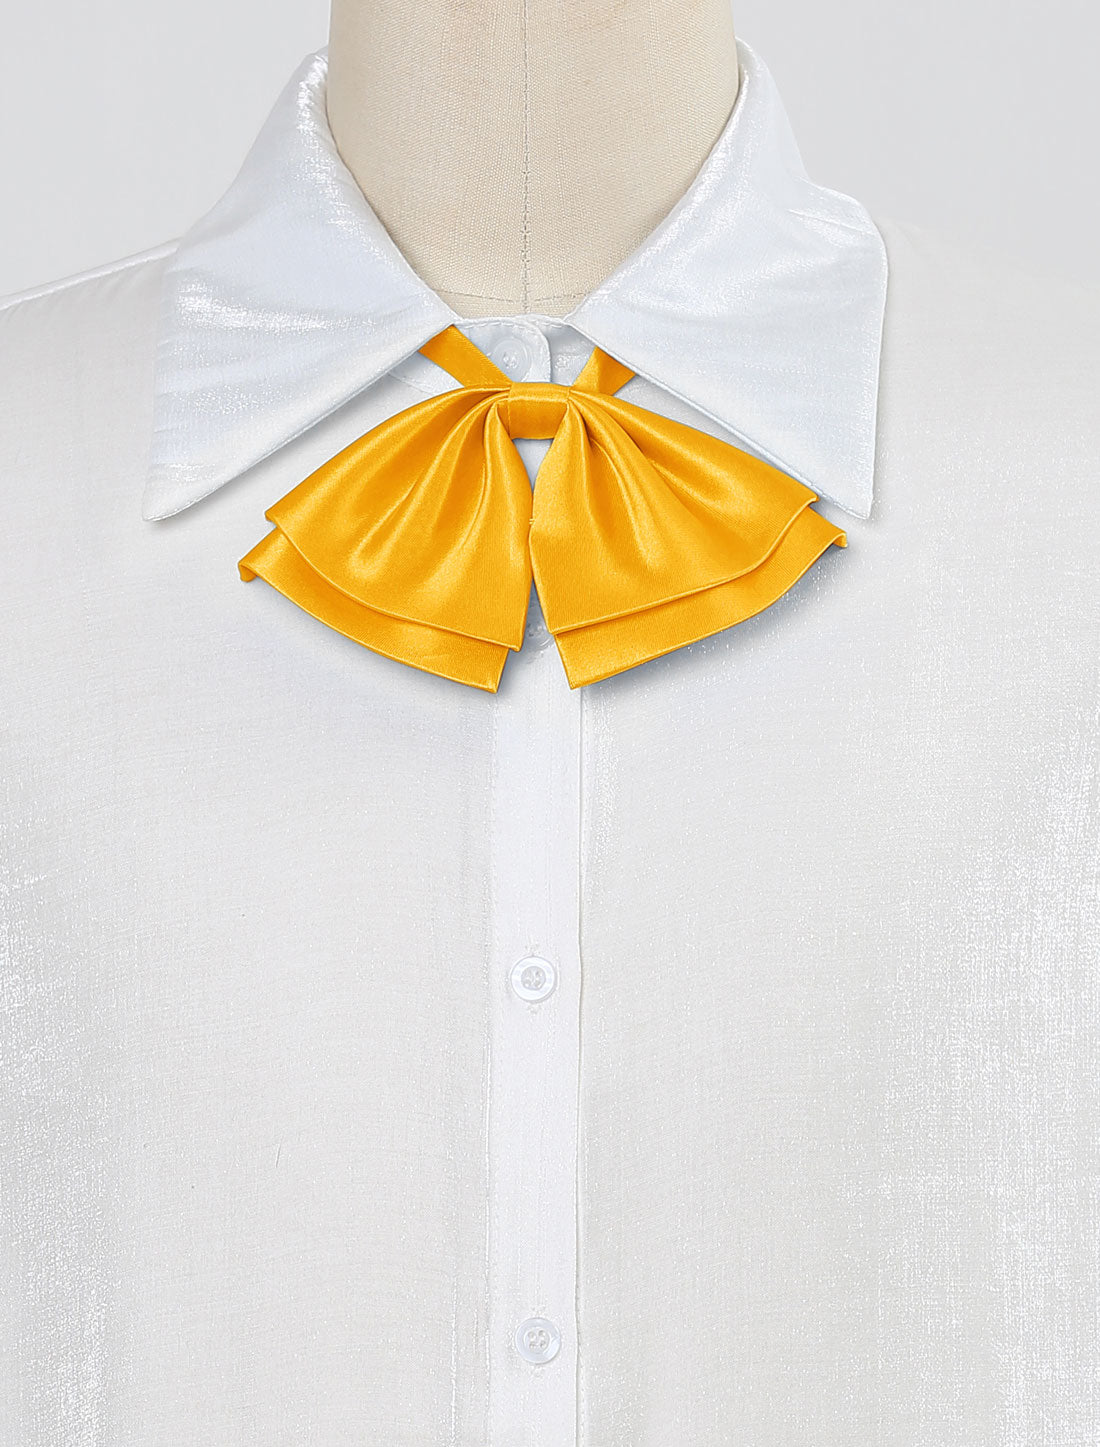 Allegra K Pre-Tied Neckties Bowknot Solid Adjustable Casual Uniform Bowtie